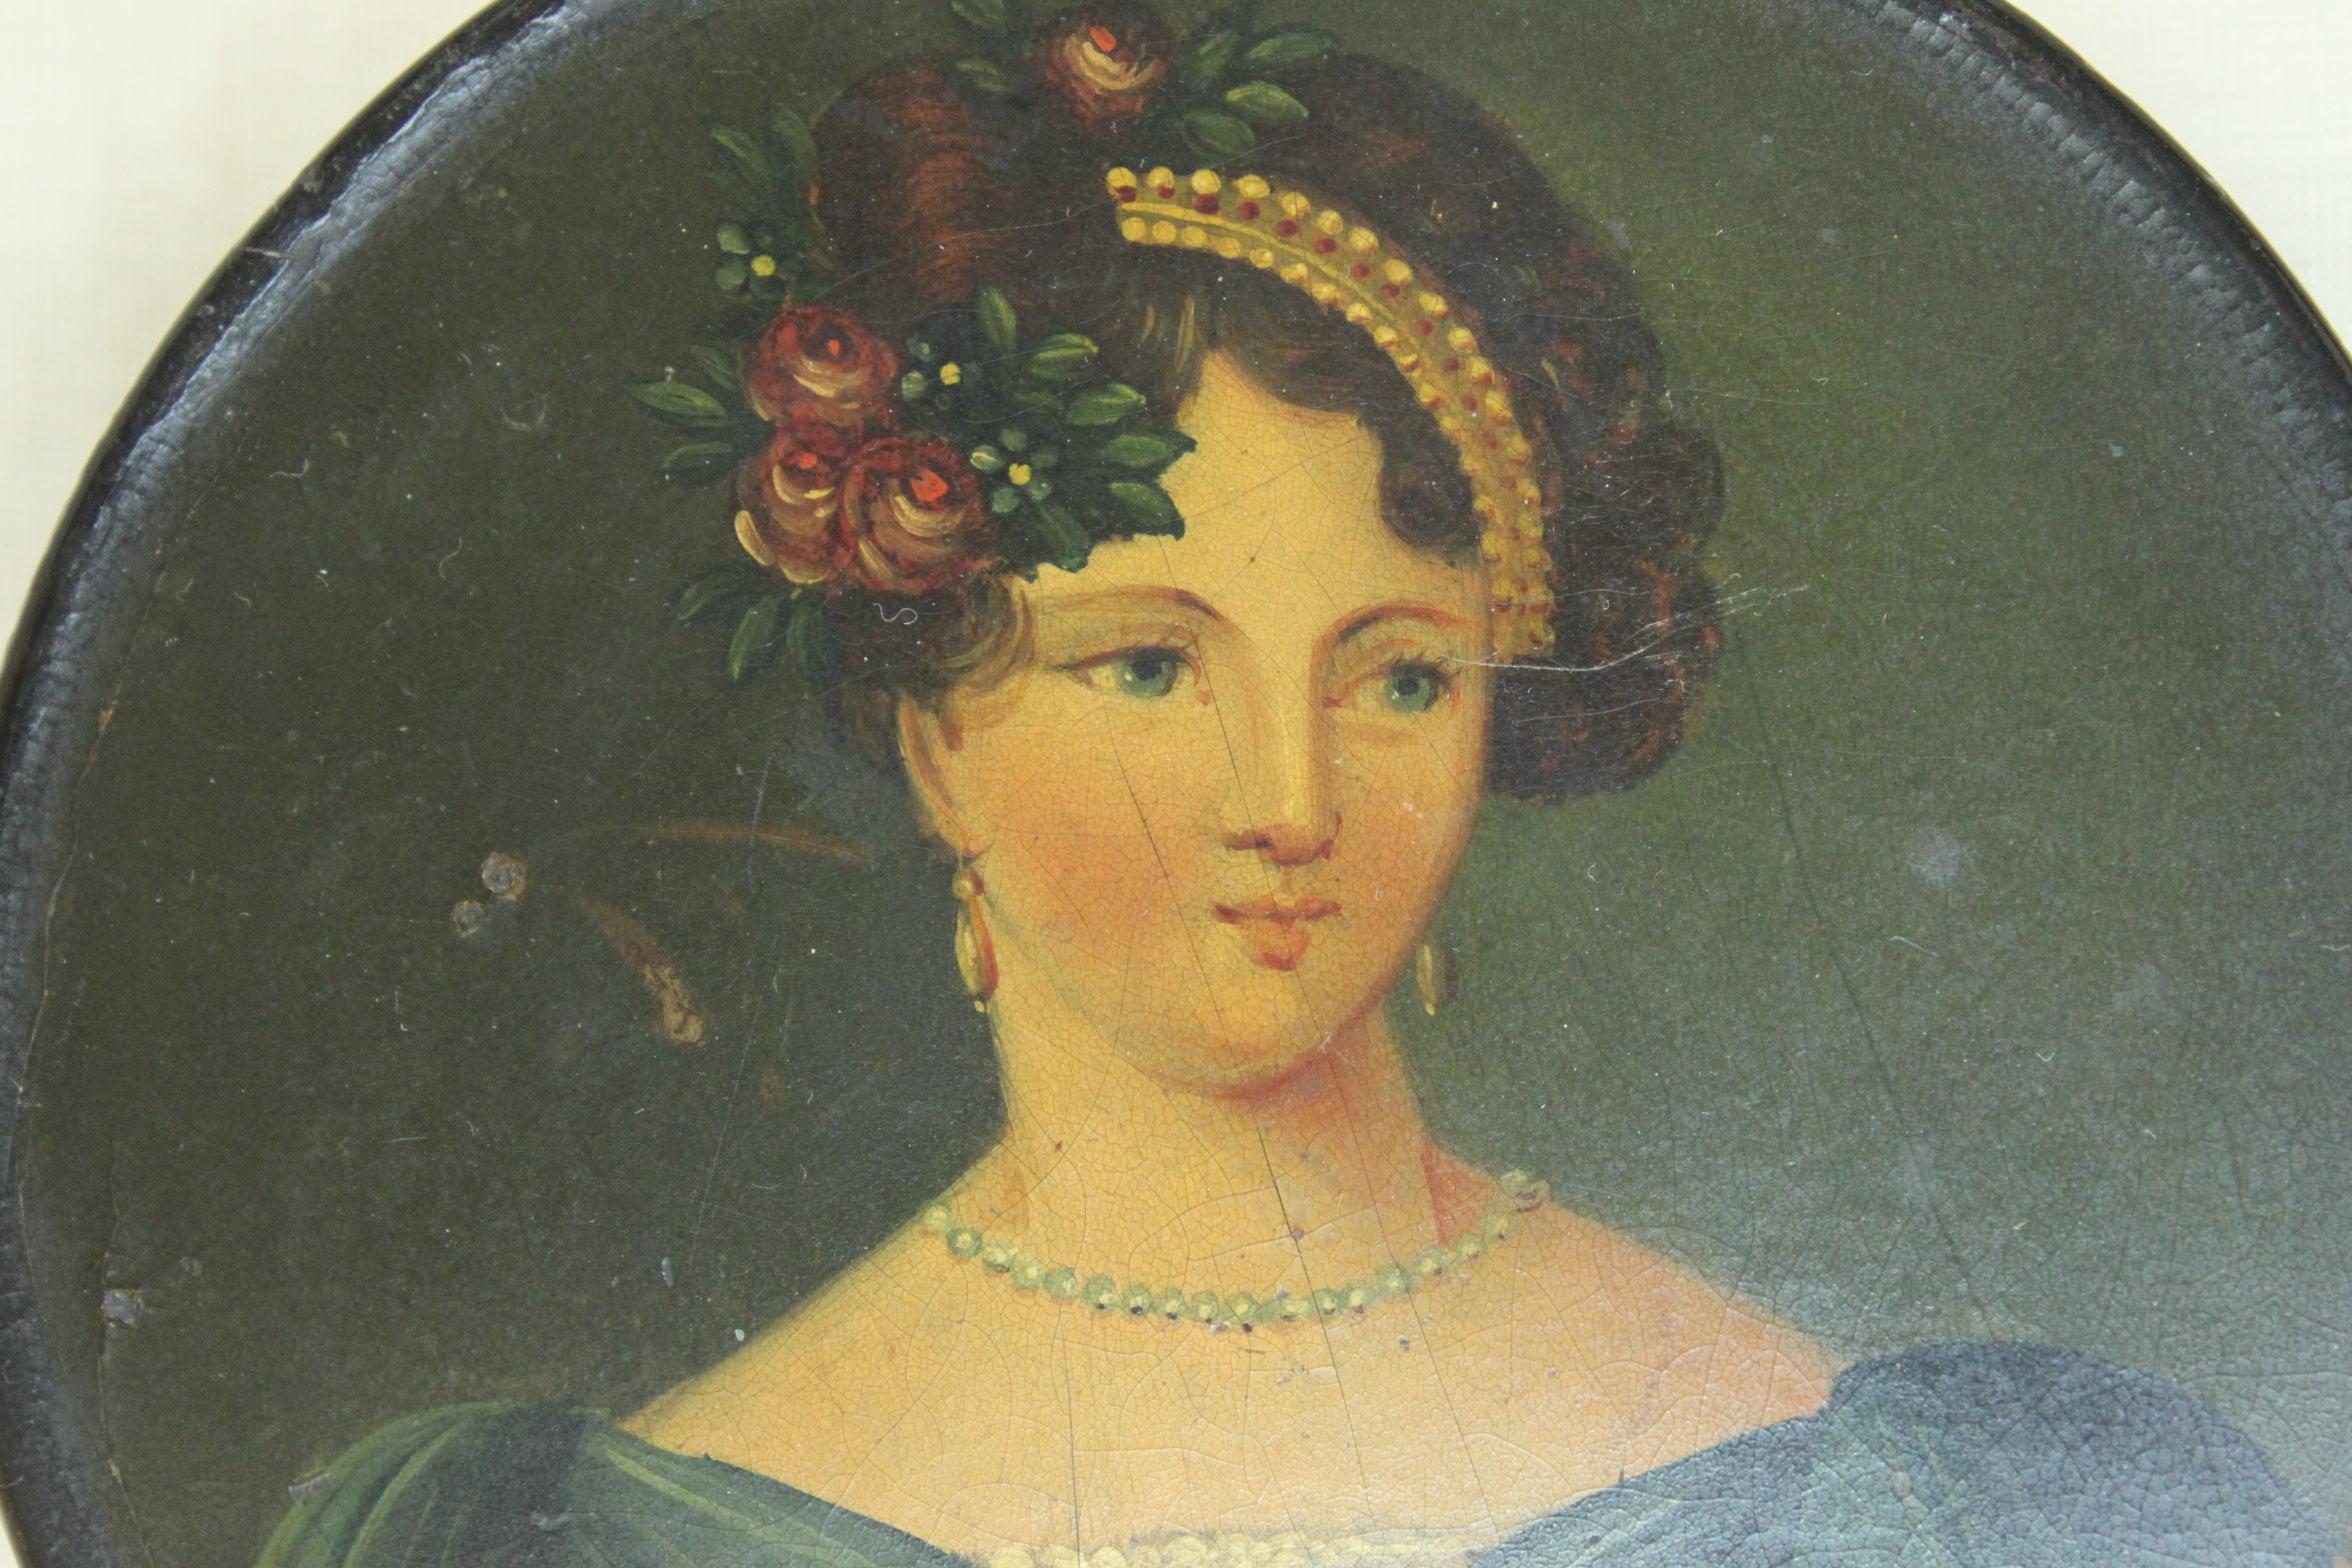 Diese Schnupftabakdose aus Pappmaché ist mit dem handgemalten Porträt einer gut gekleideten Dame aus dem frühen neunzehnten Jahrhundert verziert. Möglicherweise von Stobwasser aus Braunschweig in Deutschland. Sie misst 90 mm im Durchmesser und ist